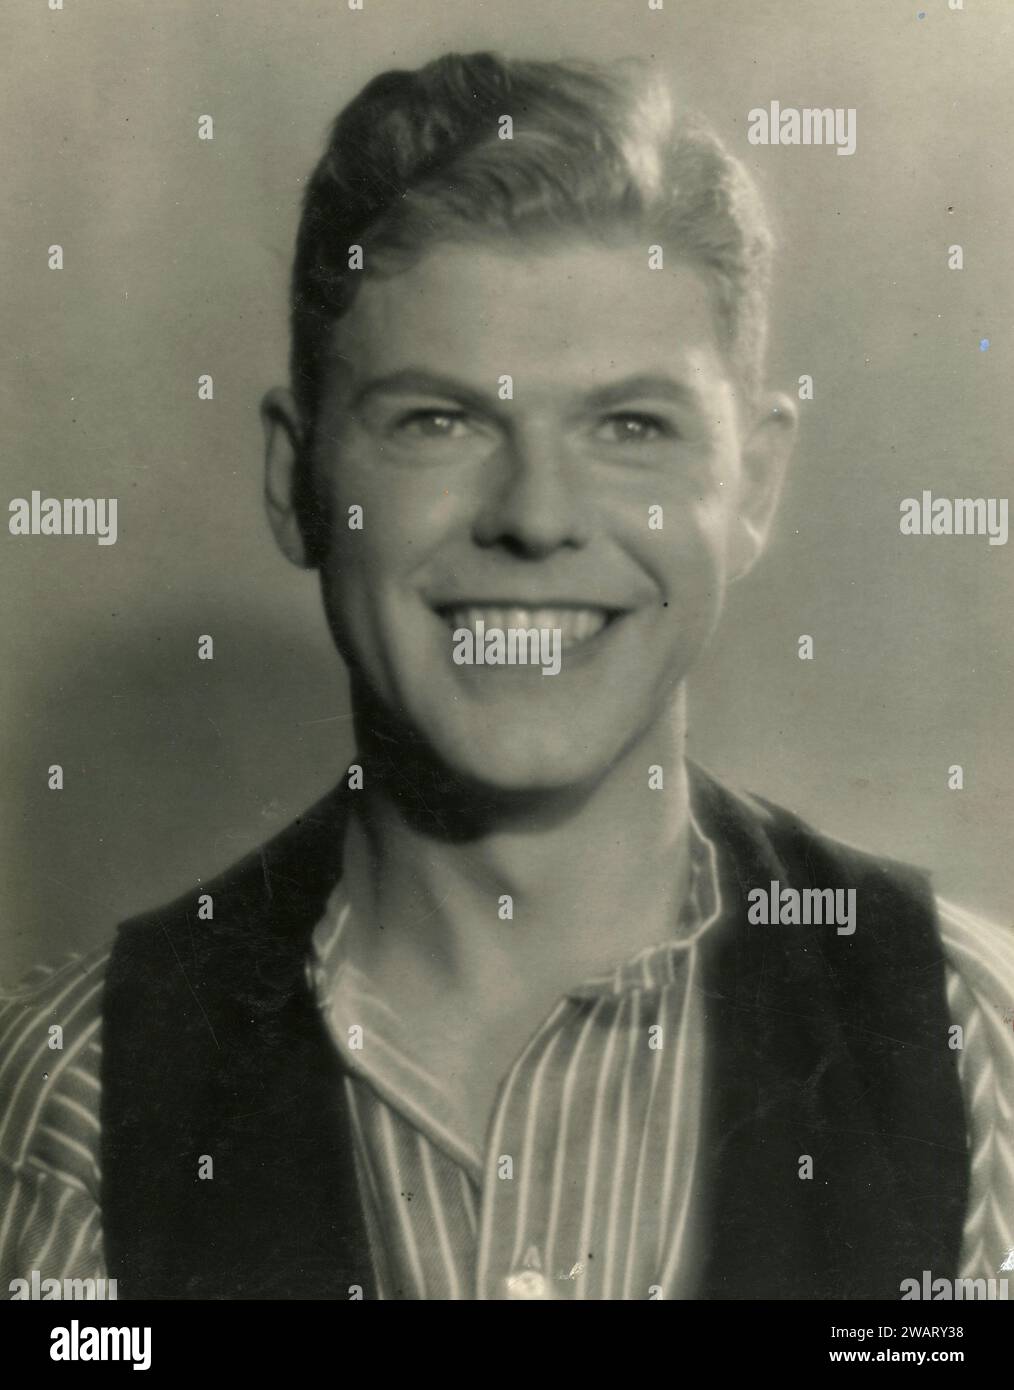 Acteur danois souriant, Danemark années 1950 Banque D'Images